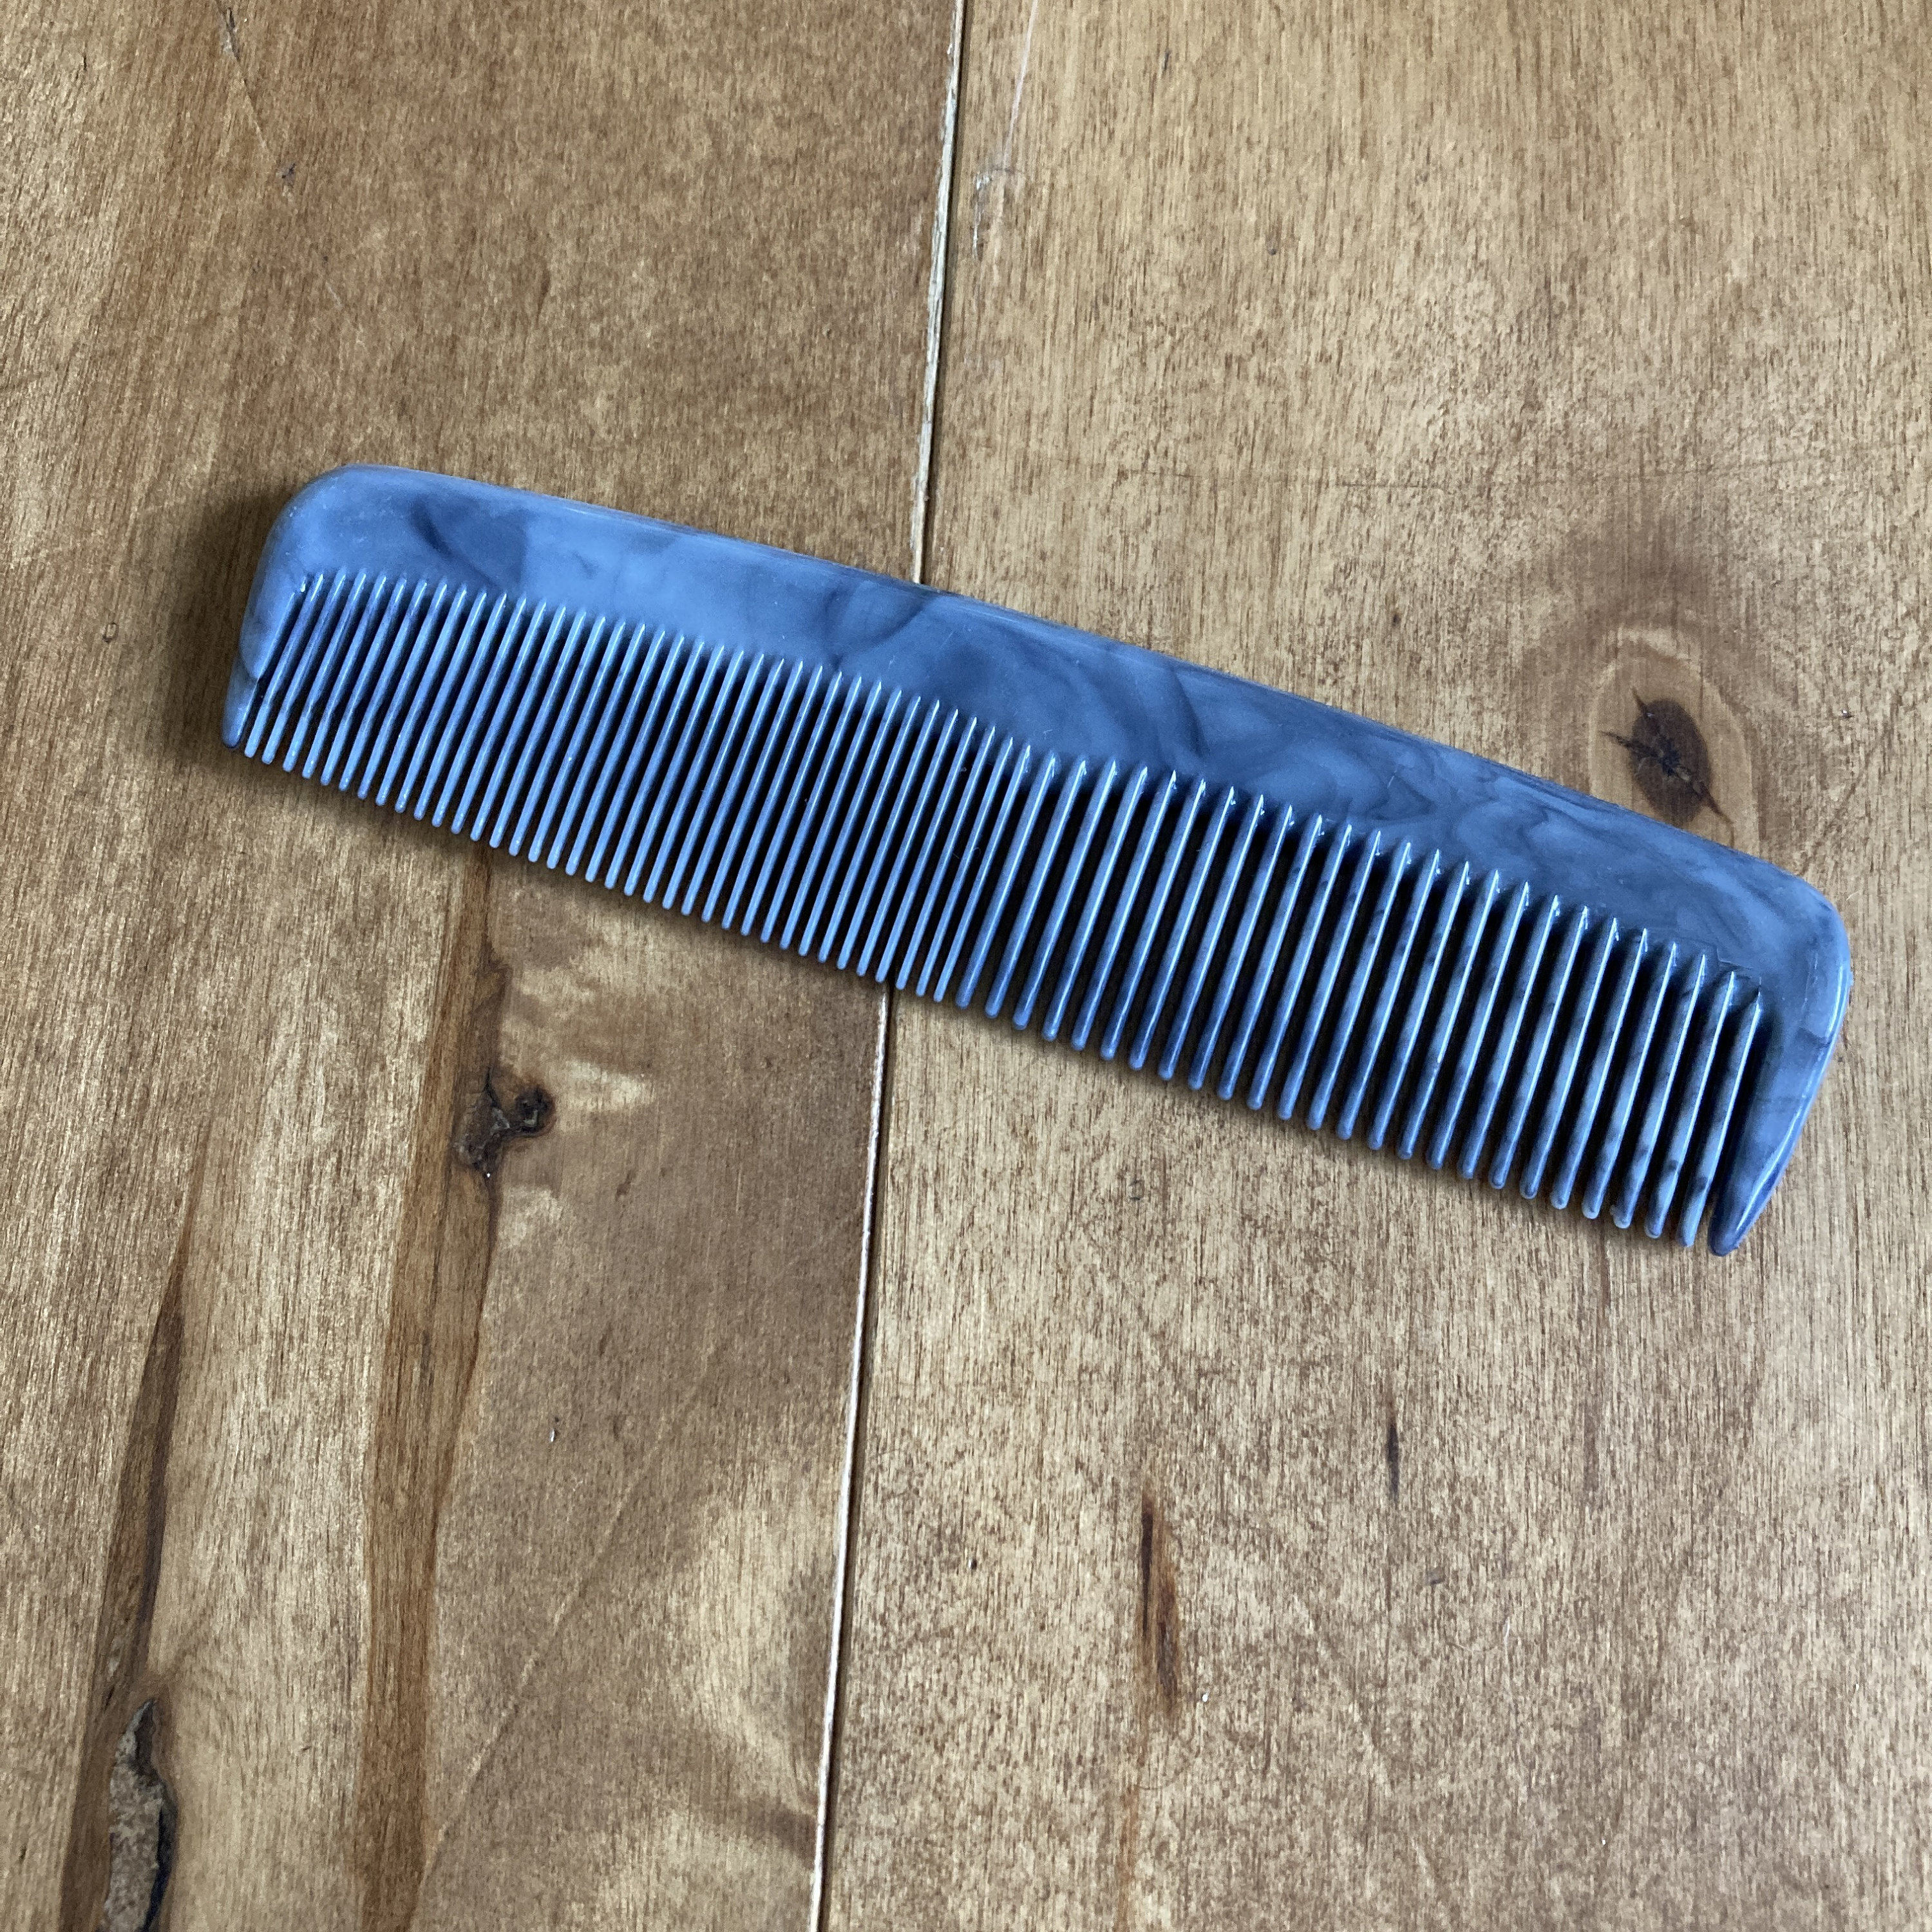 Small Vintage Fuller Dish Scrubber Brush Plastic Nylon Utensil Blue 